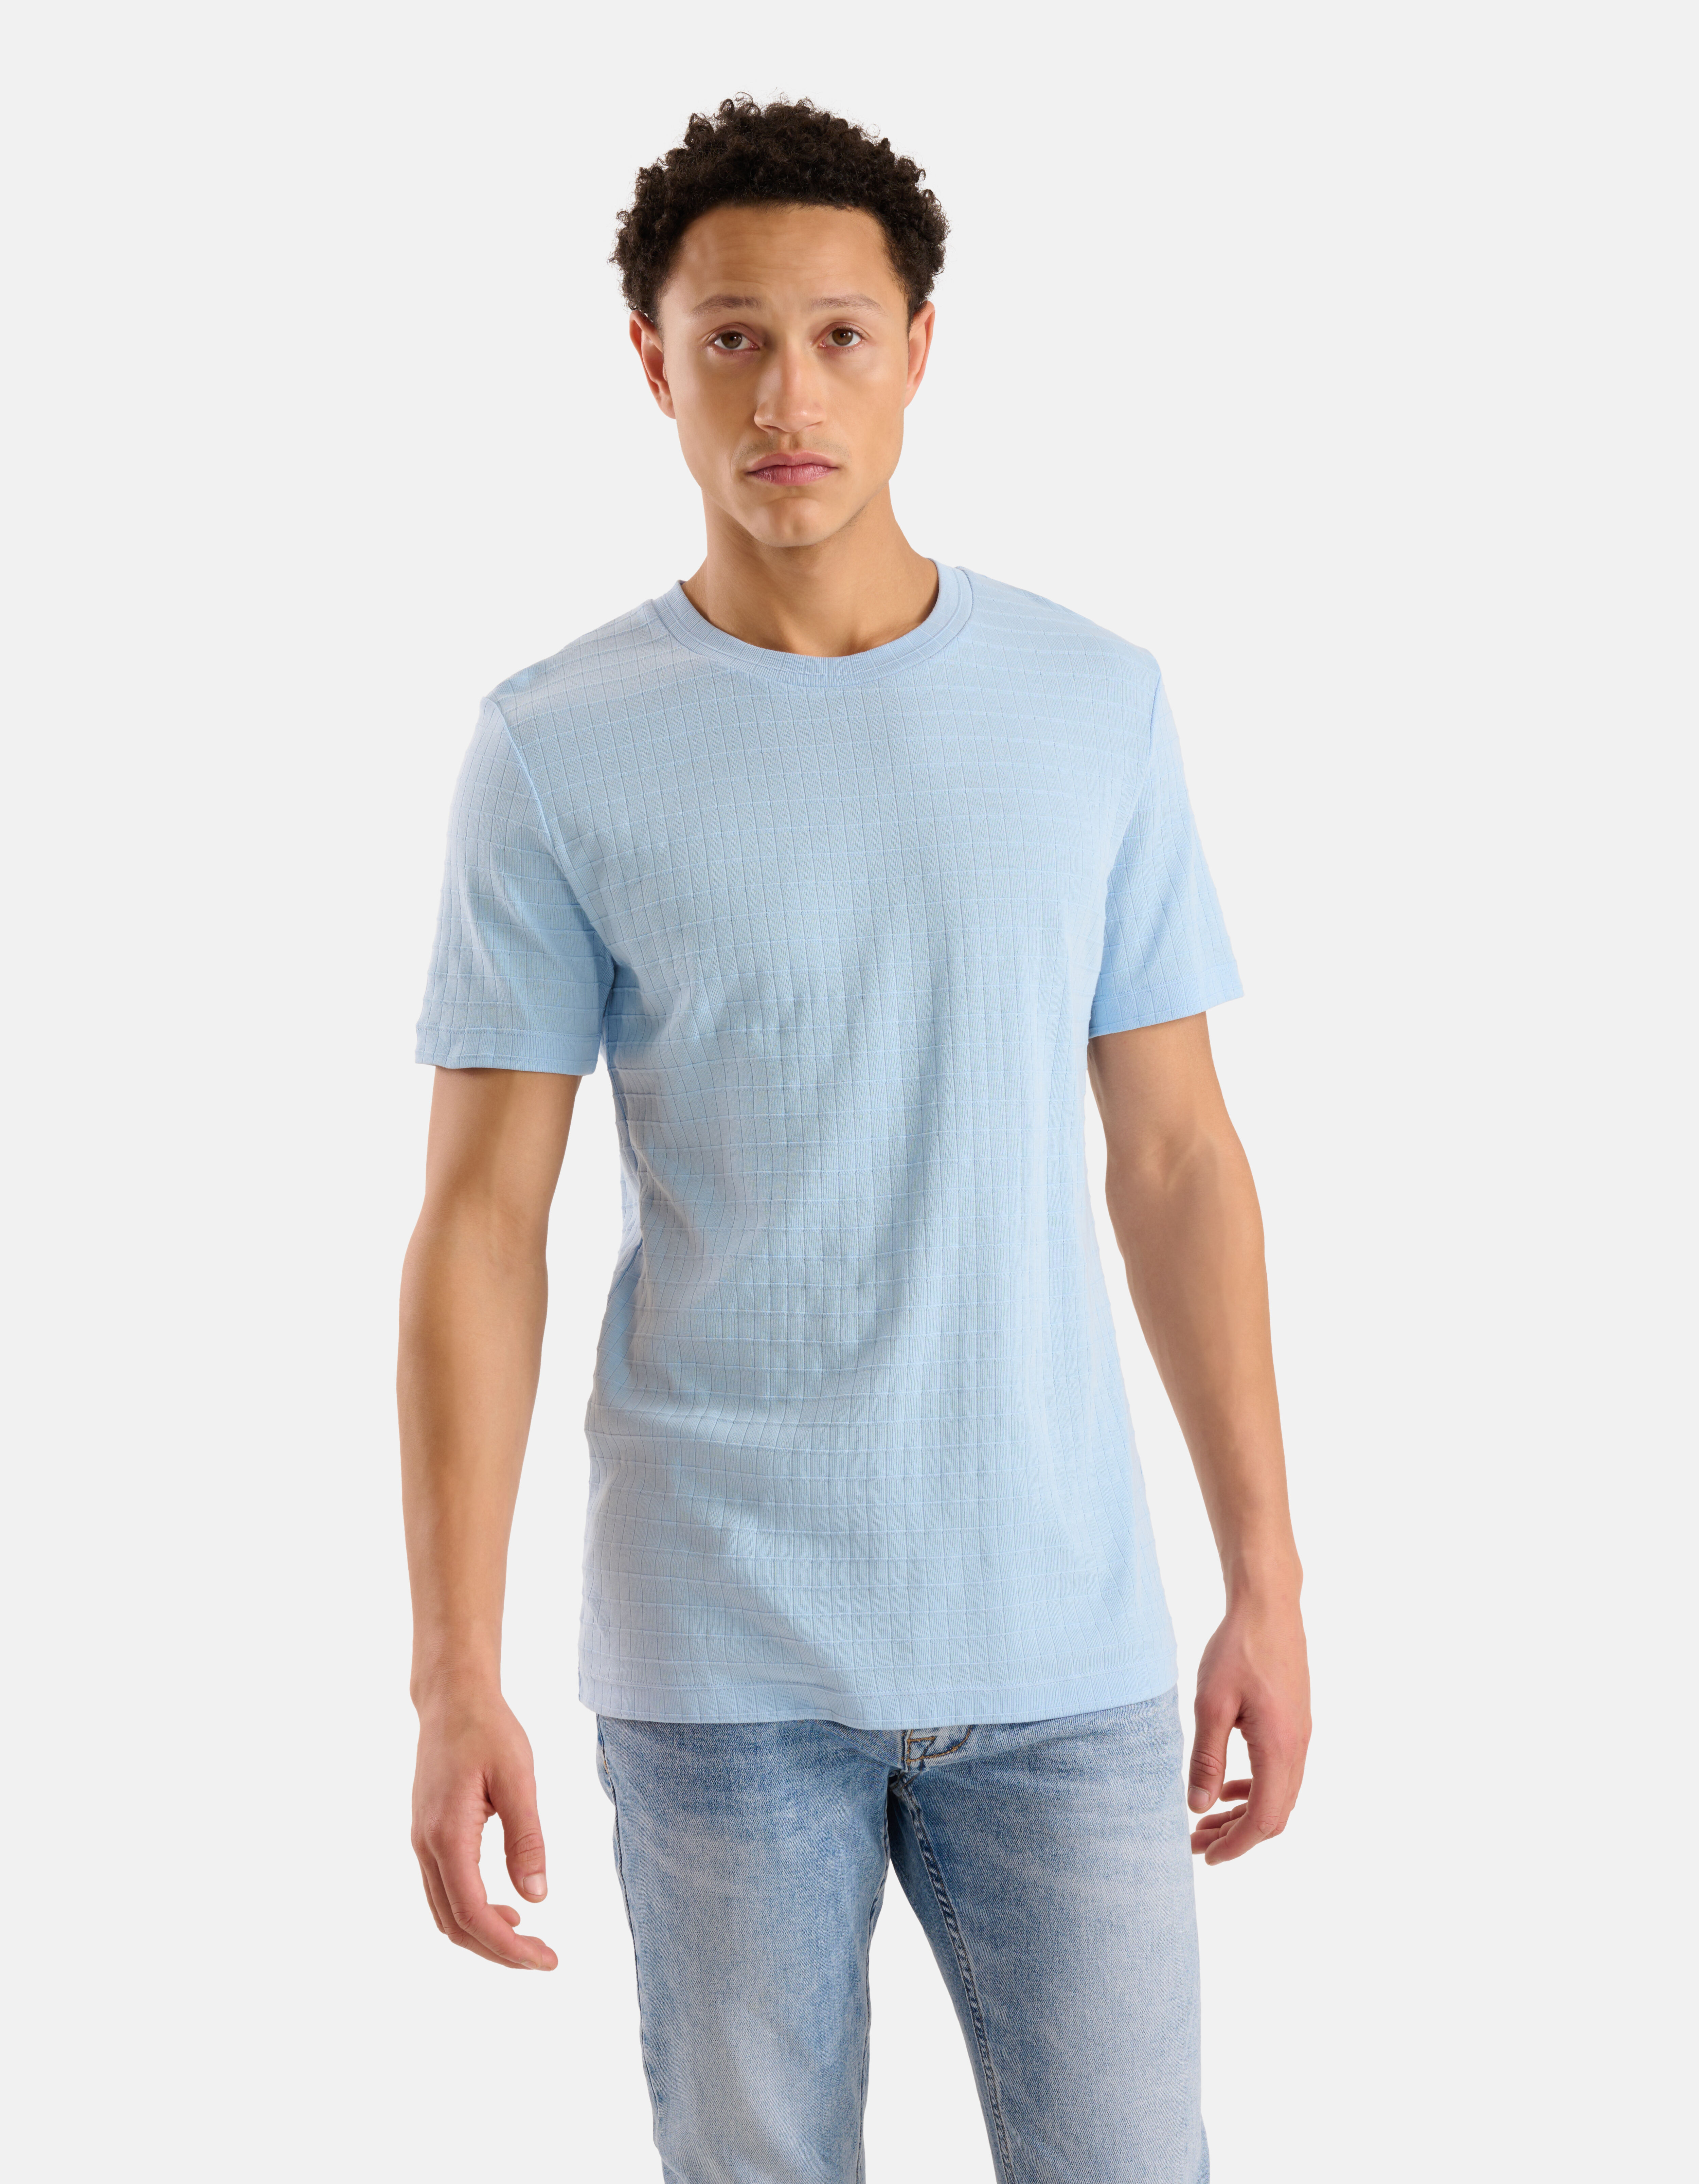 Voorschrift Verbergen knijpen Heren T-shirts met korte mouwen | Koop nu online | Shoeby